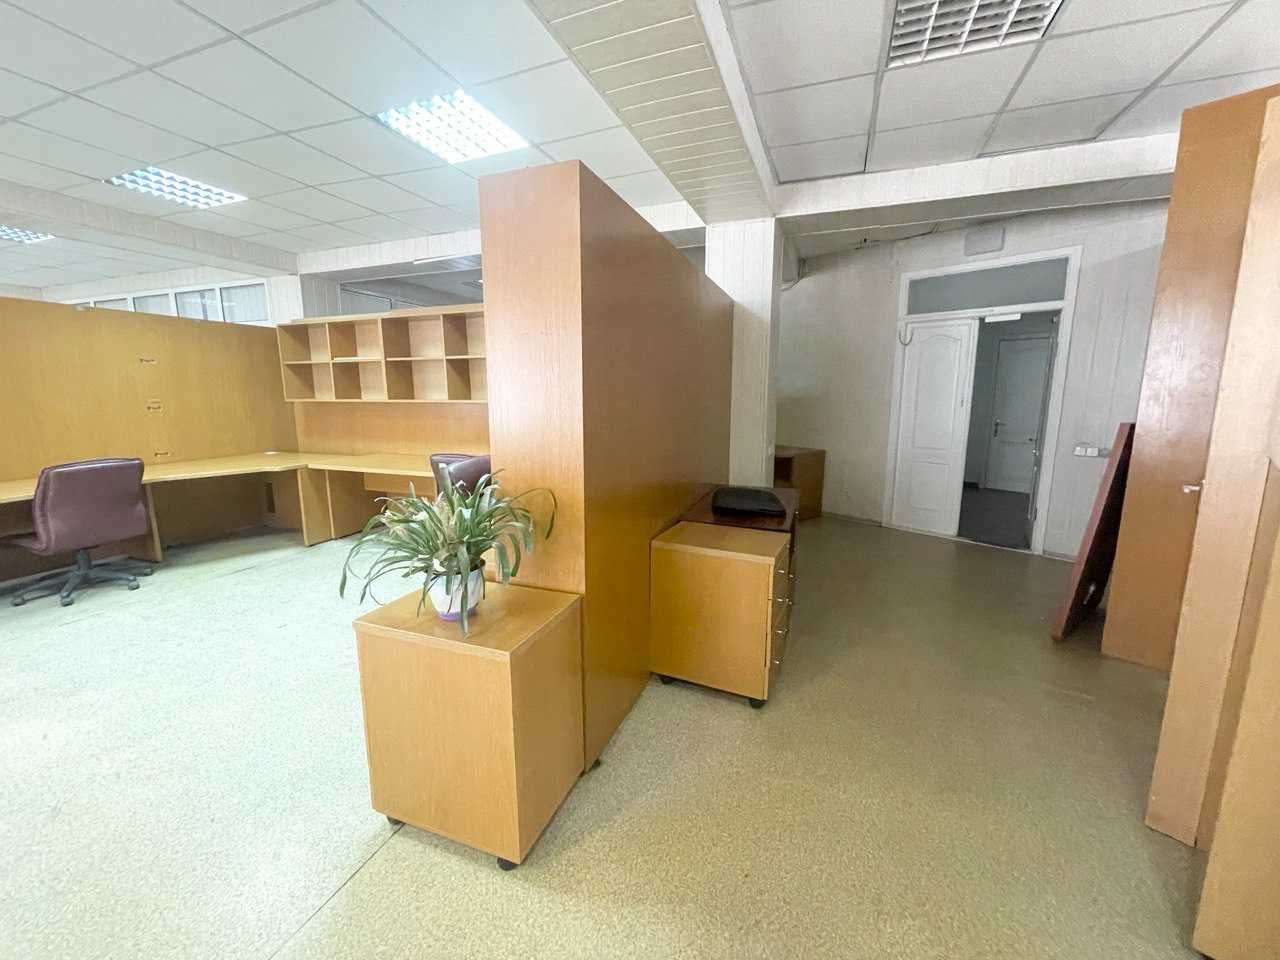 Сдам офис 158 кв.м. с мебелью, пр. Б. Хмельницкого. 12 Квартал